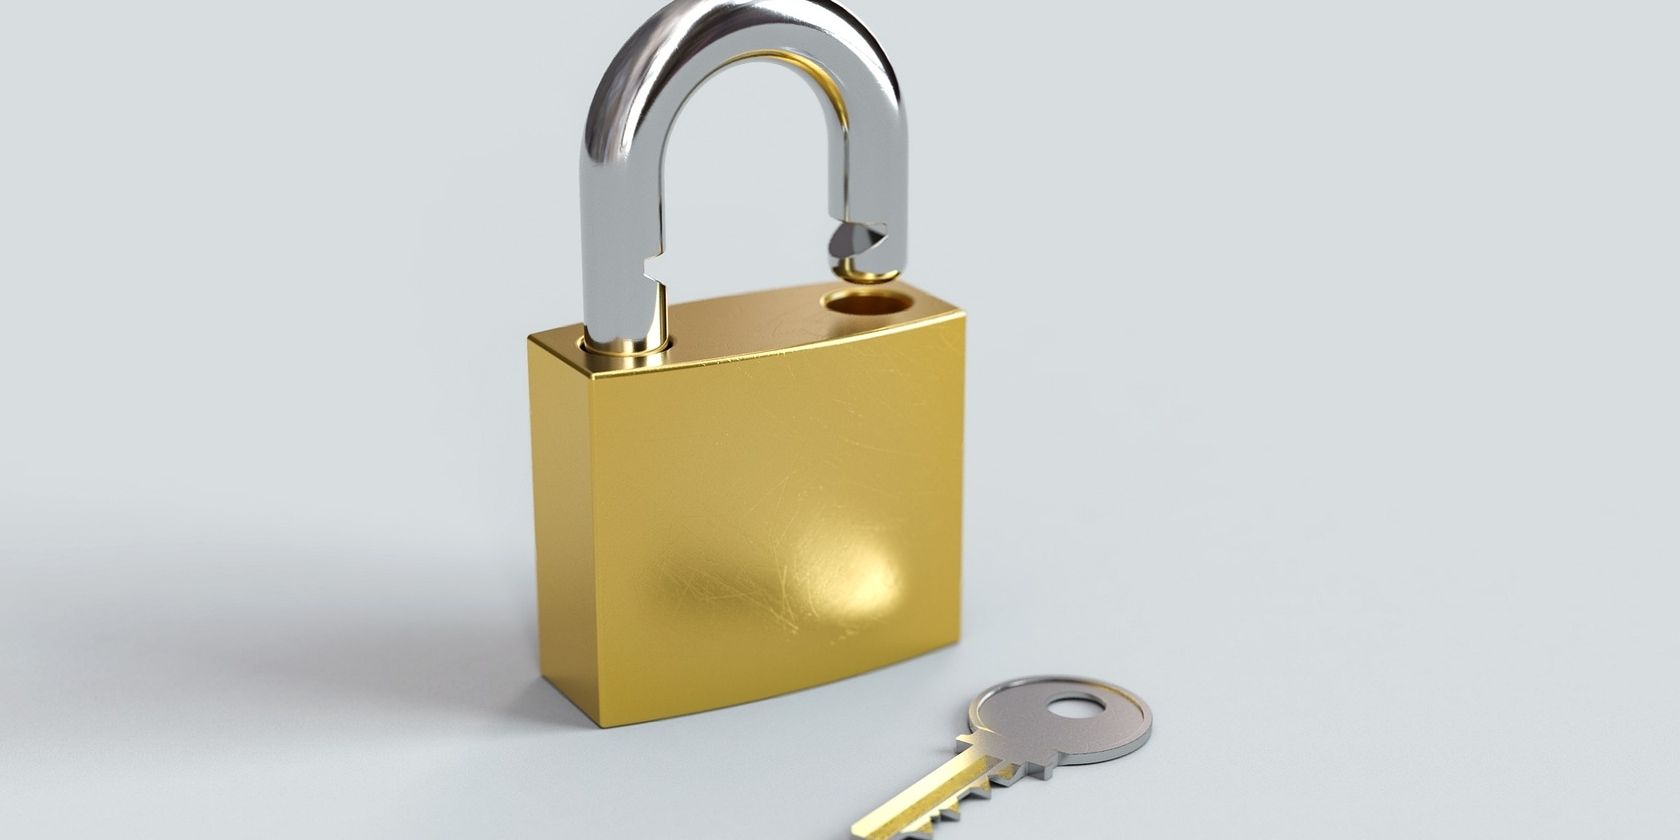 open padlock with key beside it